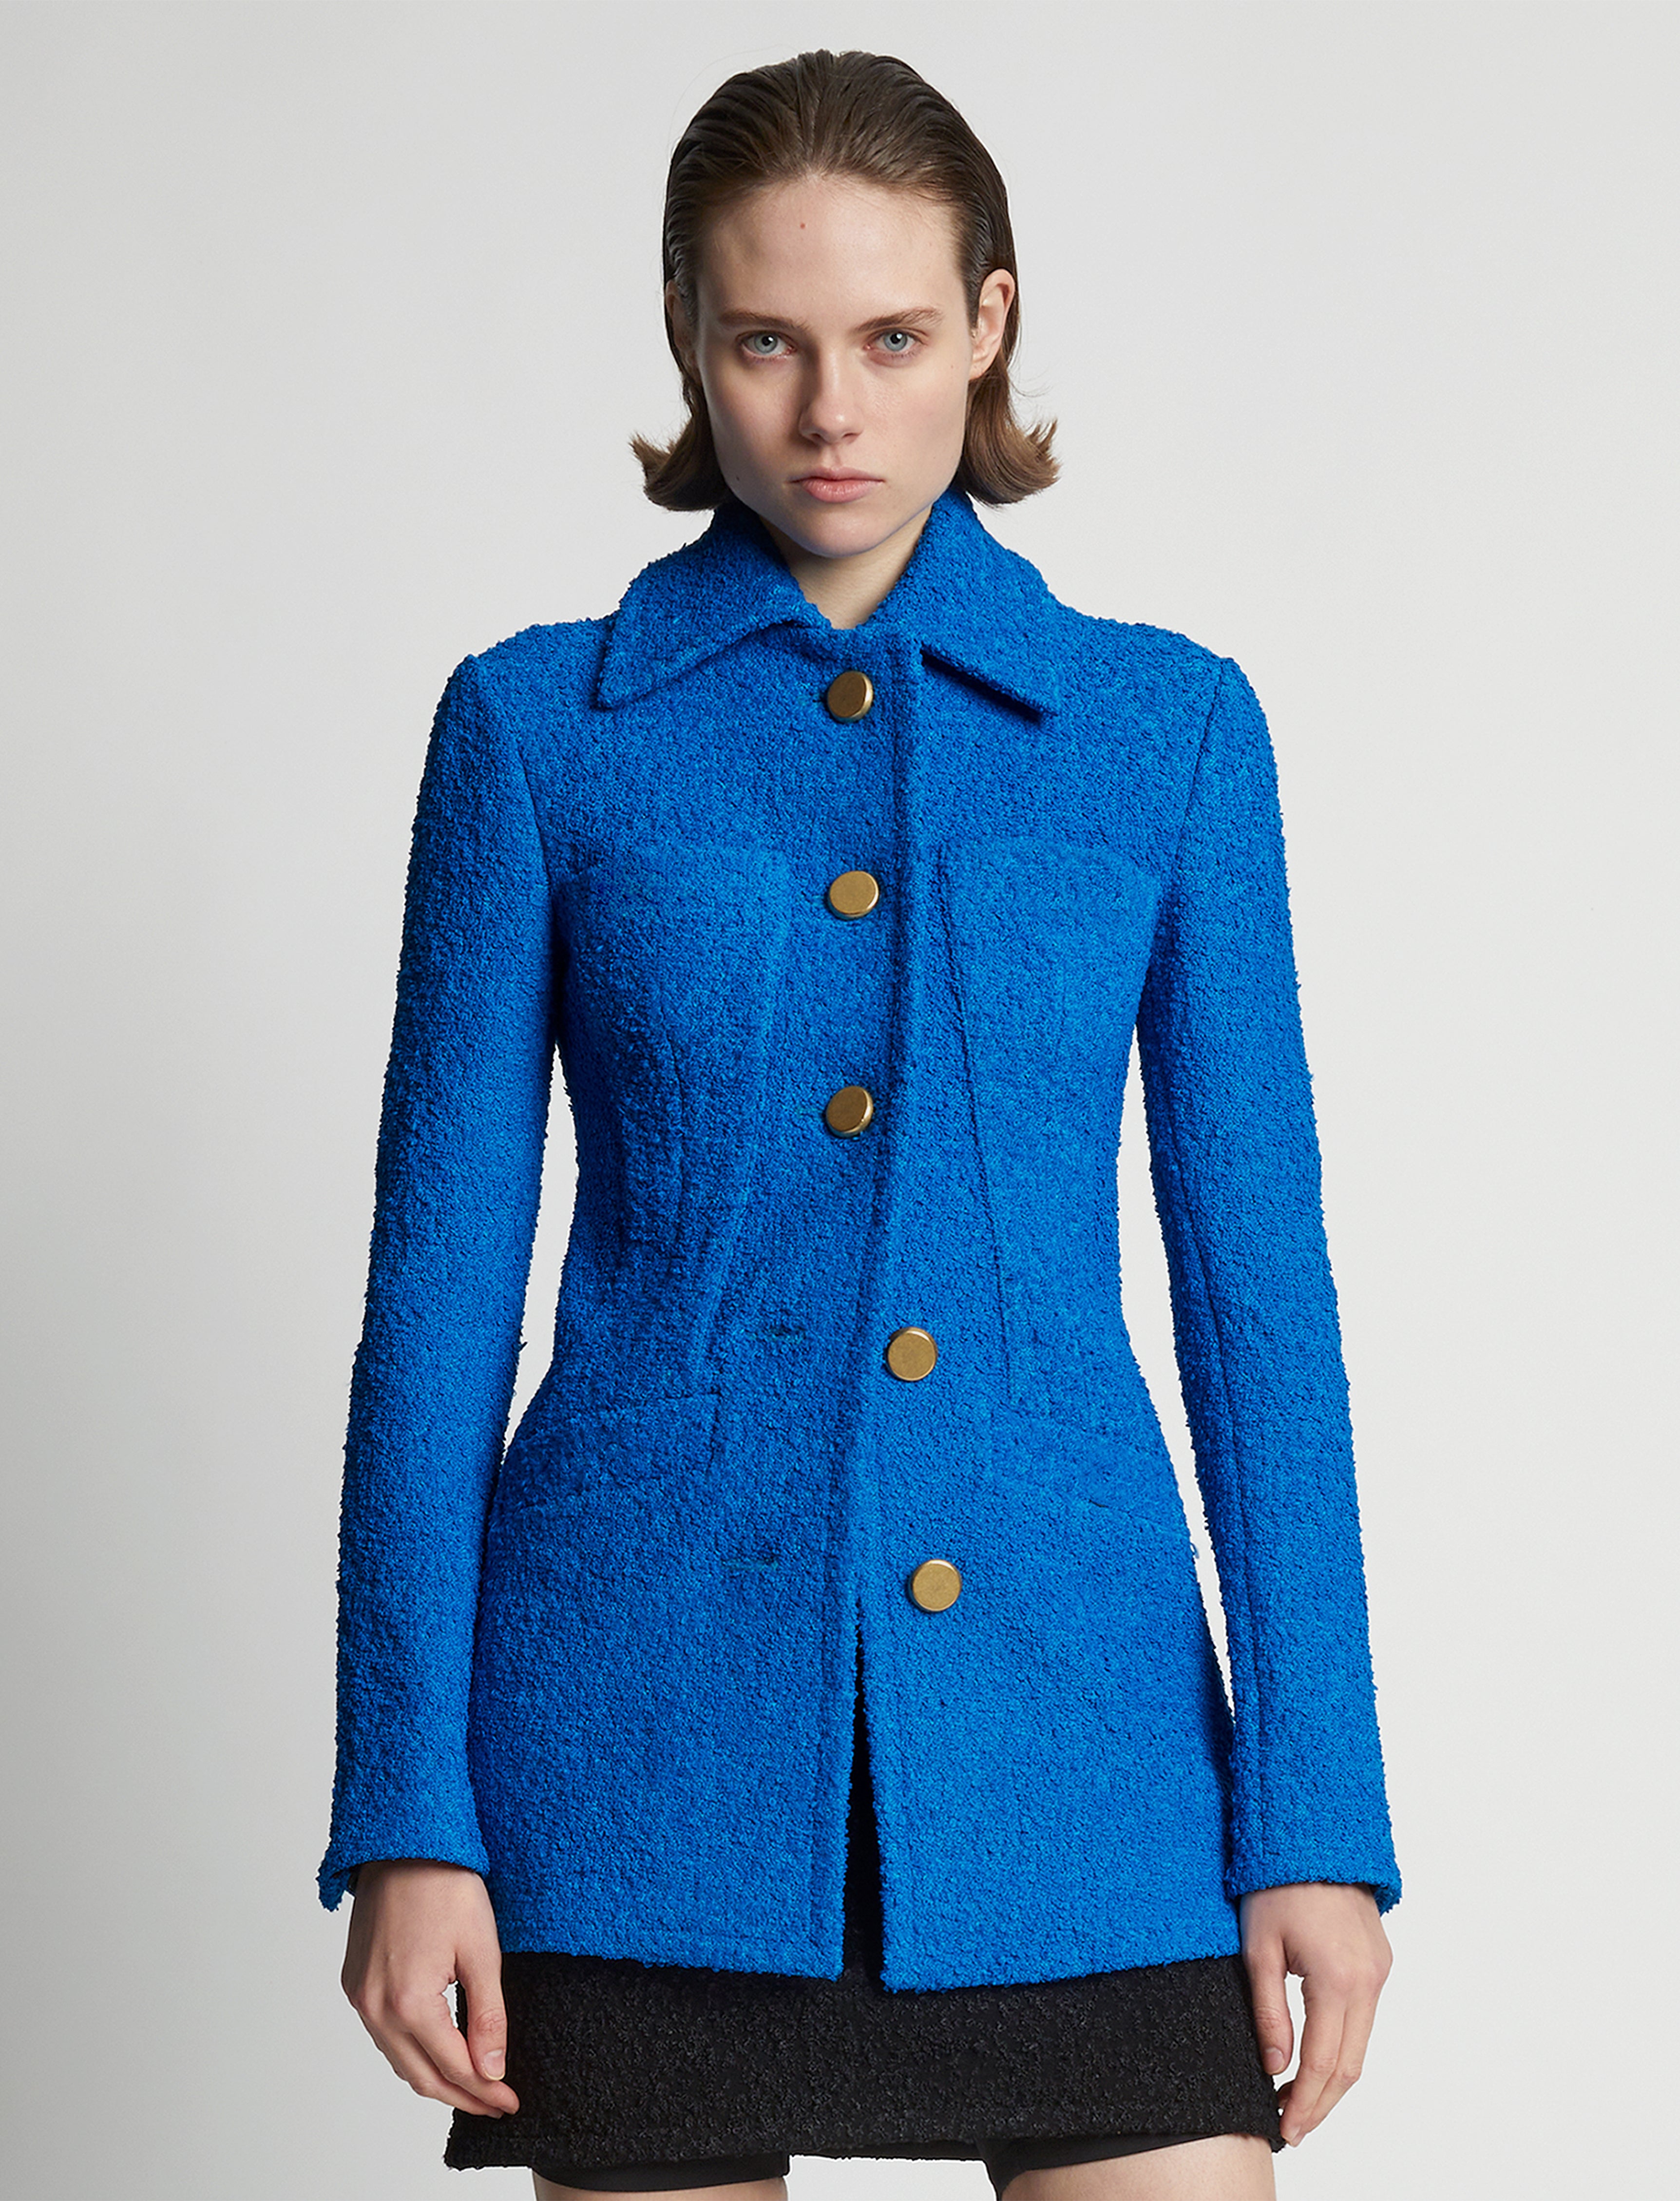 Proenza Schouler Boucle Tweed Jacket - Turquoise | Proenza 